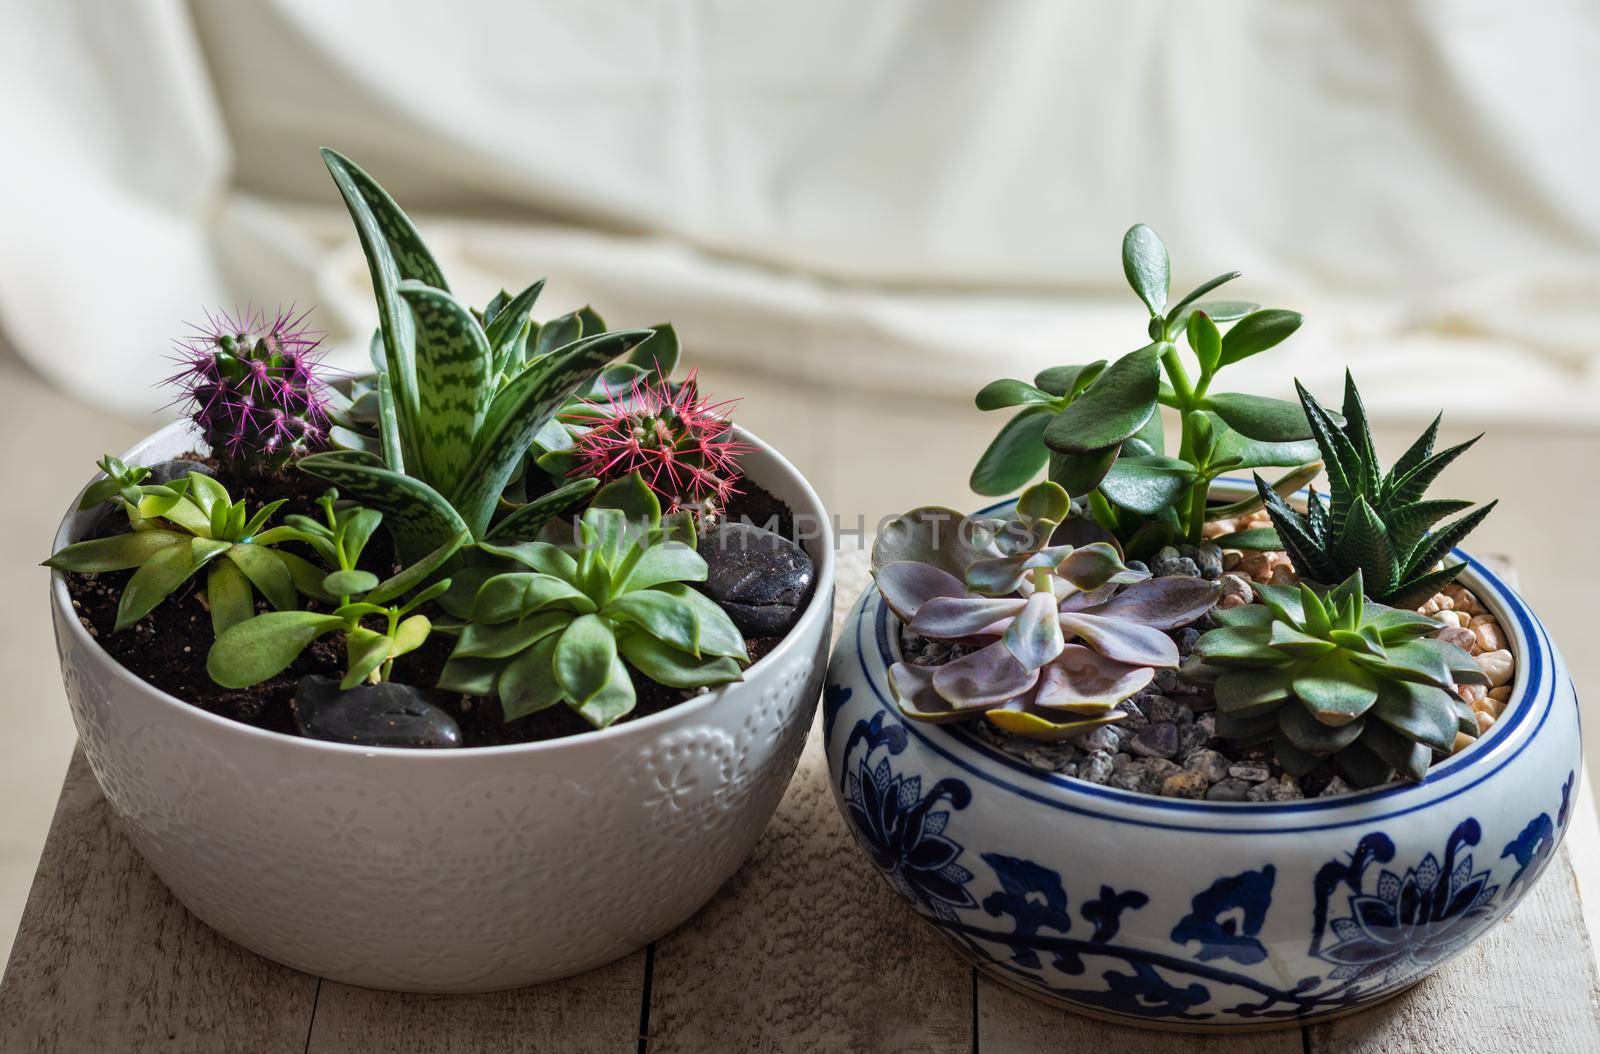 Terrarium plants in pot, with cactus, succulent close up